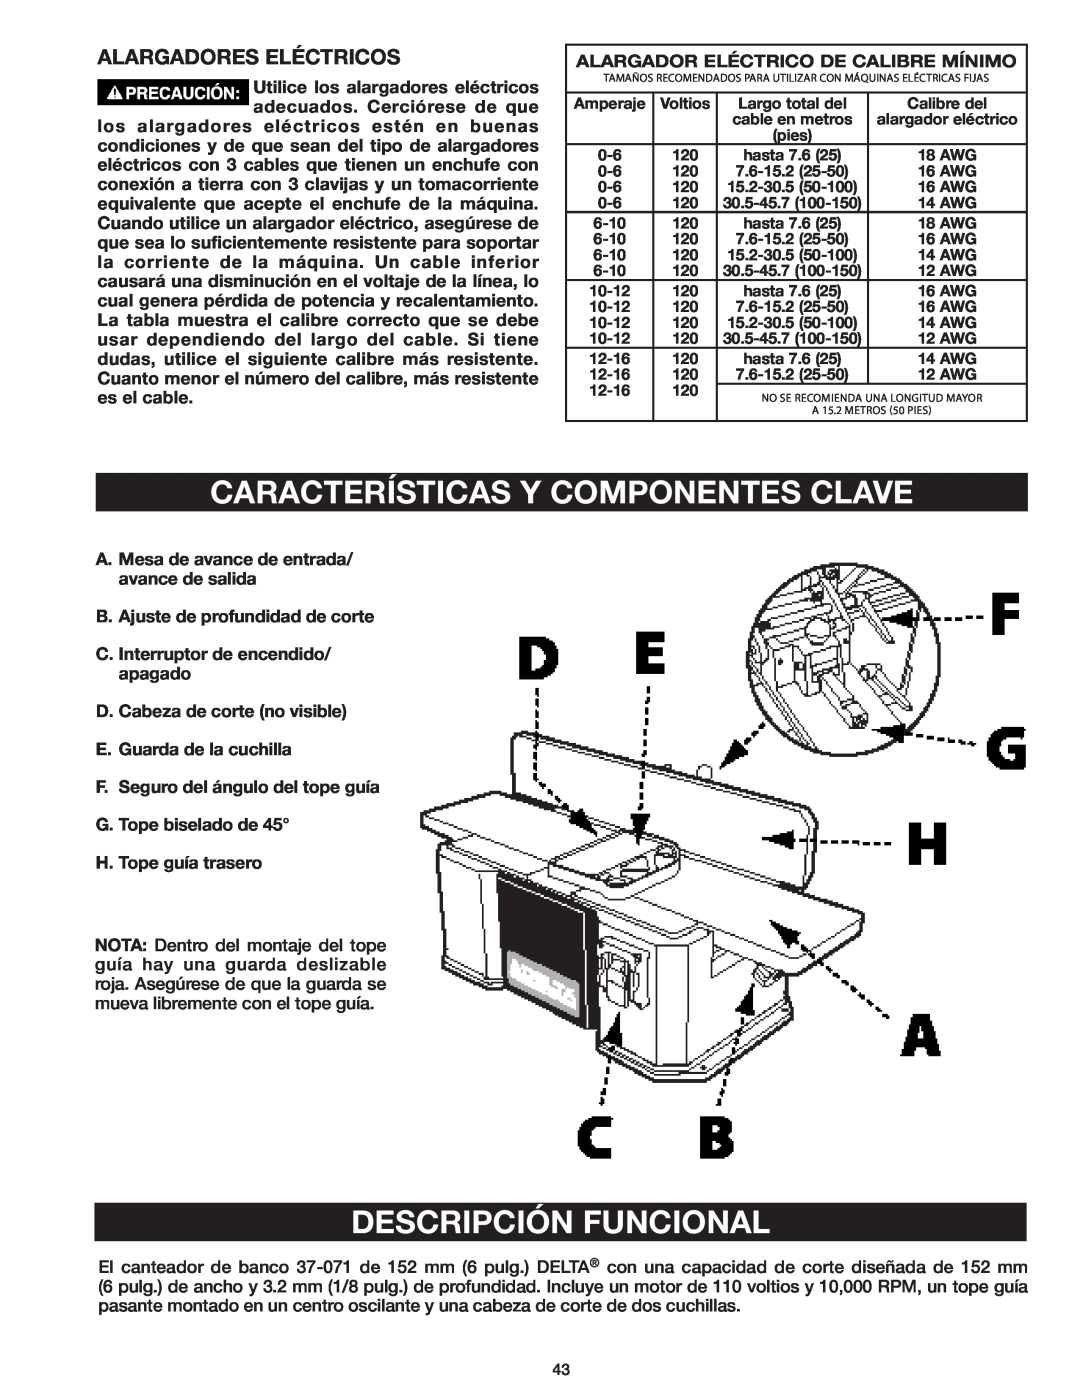 Delta 37-071 instruction manual Características Y Componentes Clave, Descripción Funcional, Alargadores Eléctricos 